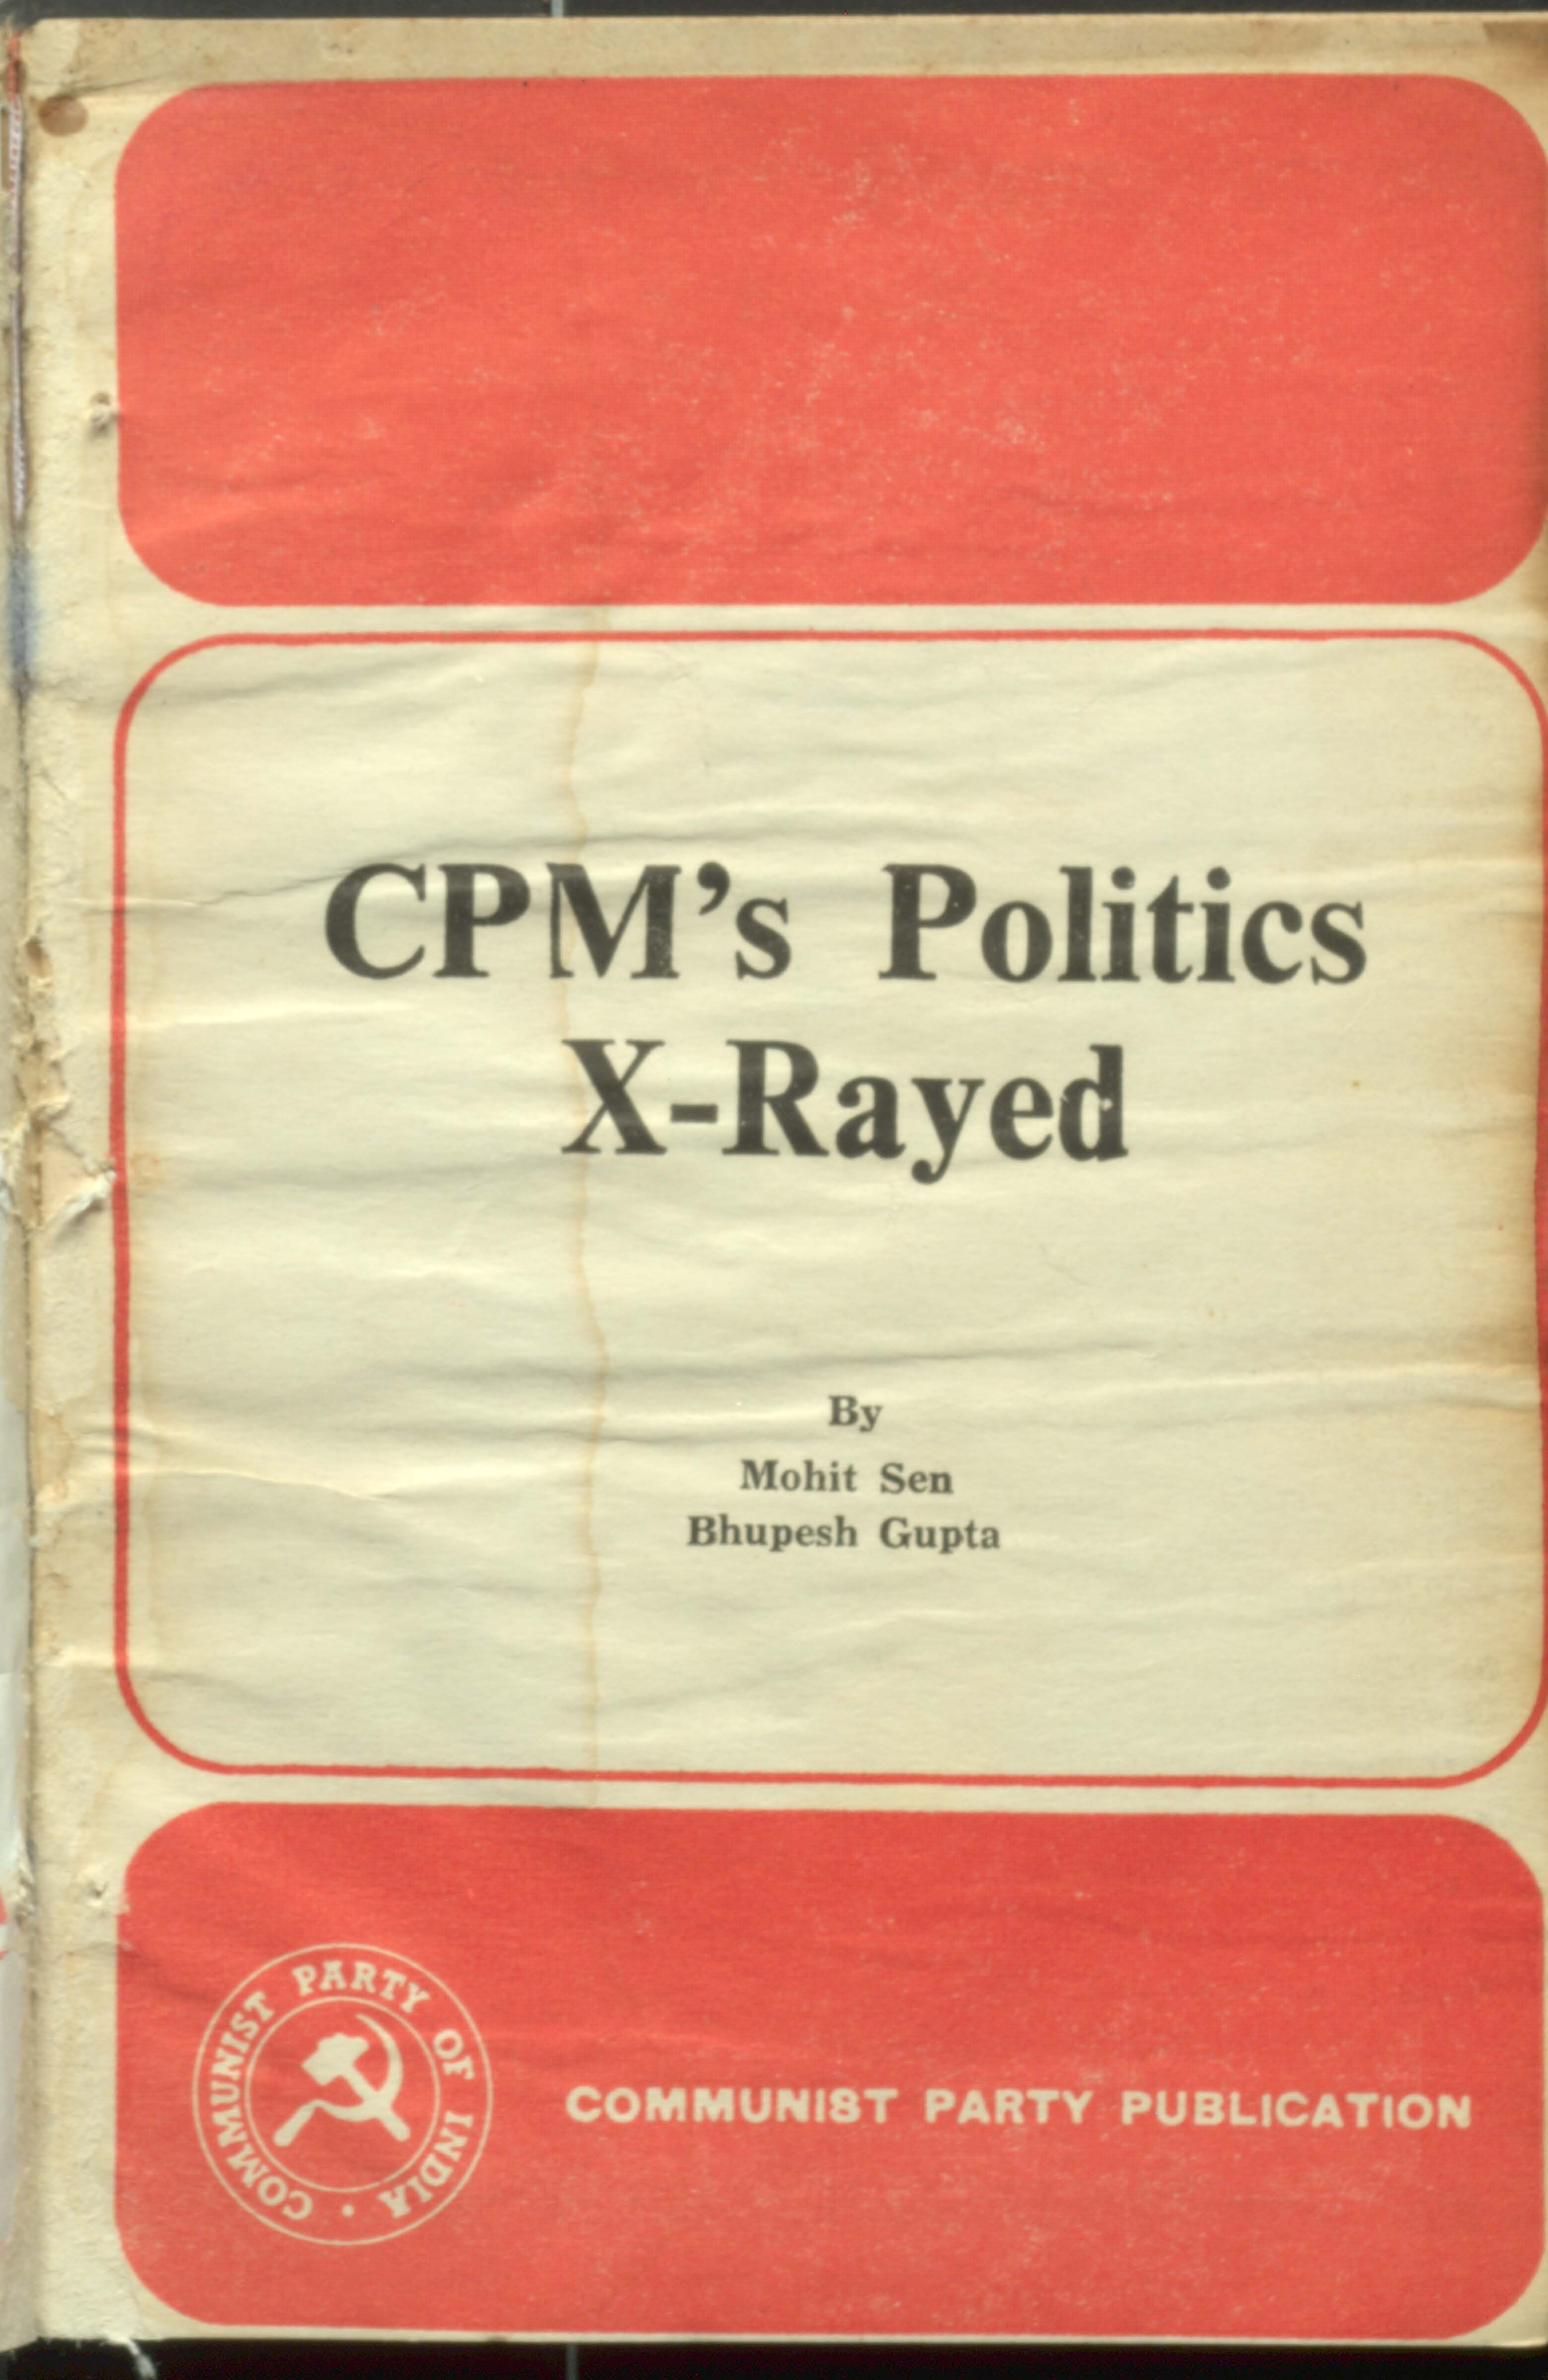 CPM's Politics X-Rayed